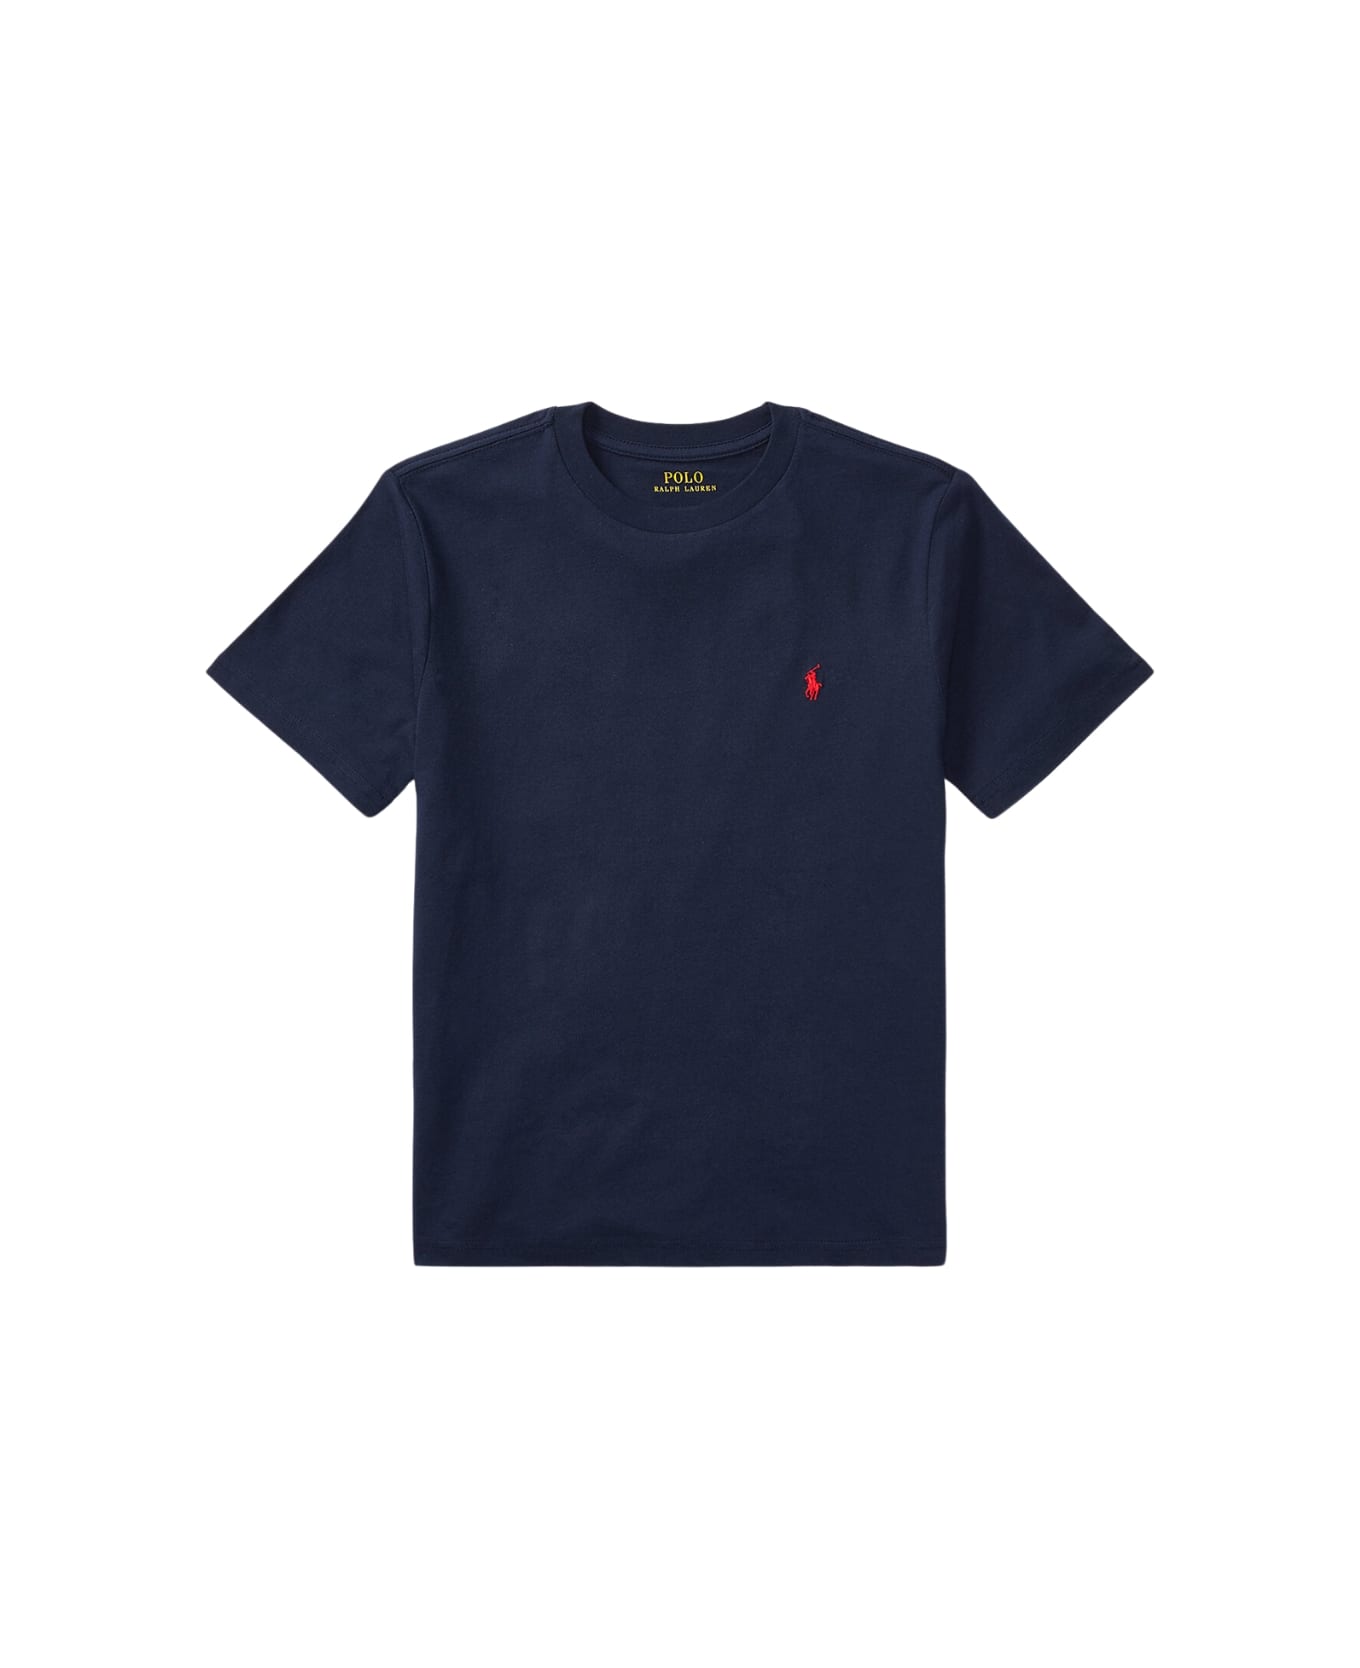 Polo Ralph Lauren Ss Cn-tops-t-shirt - Cruise Navy